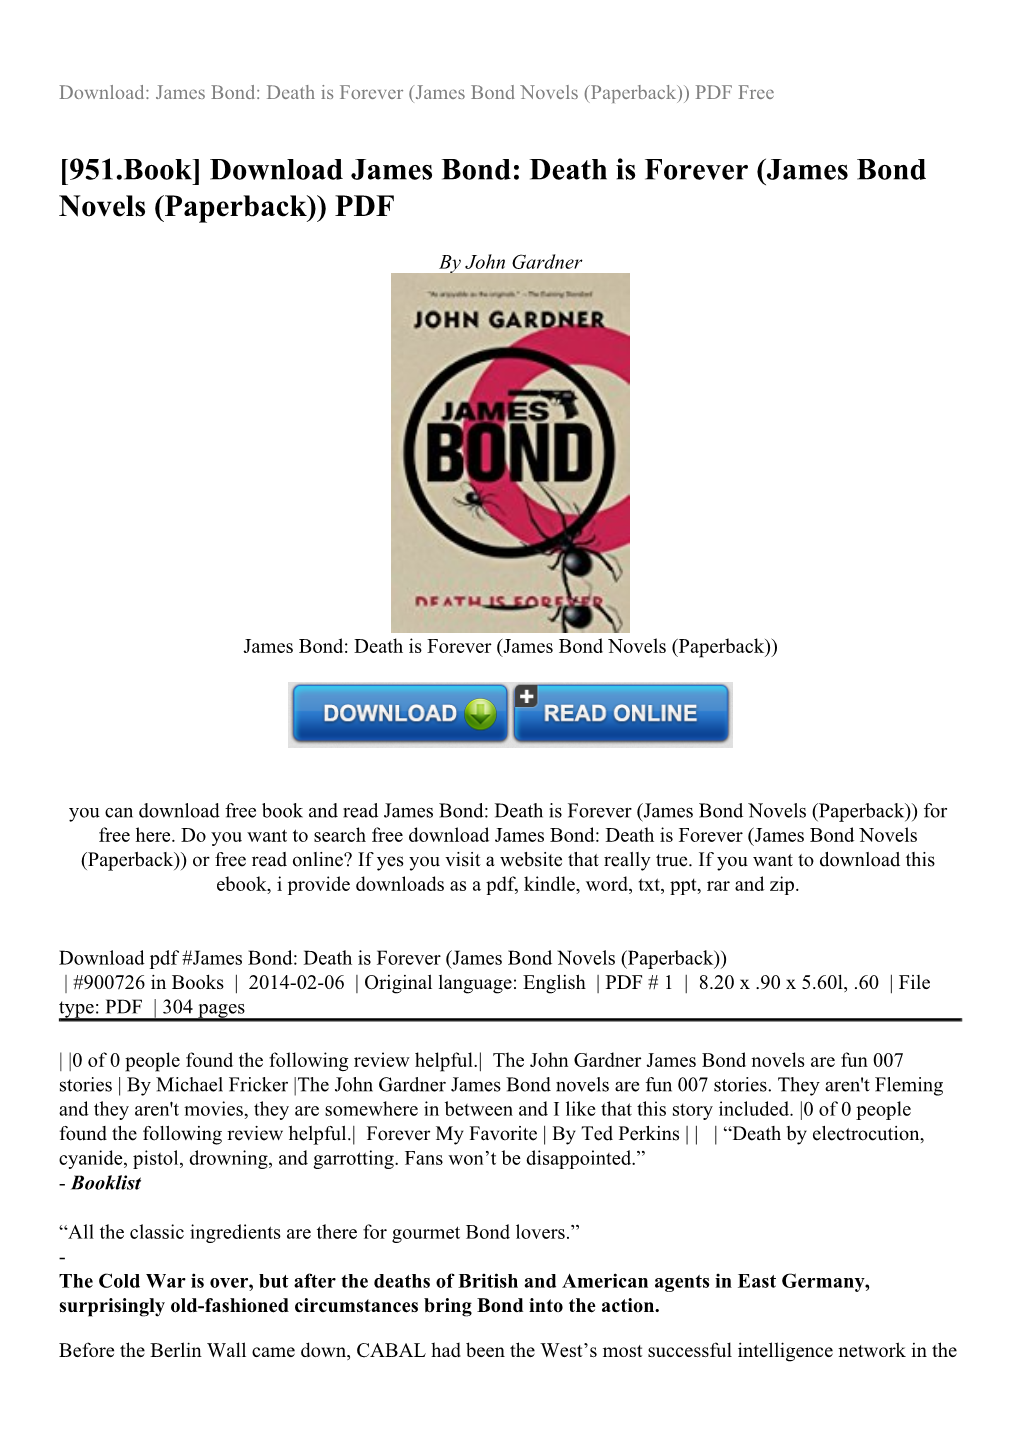 Download James Bond: Death Is Forever (James Bond Novels (Paperback)) PDF